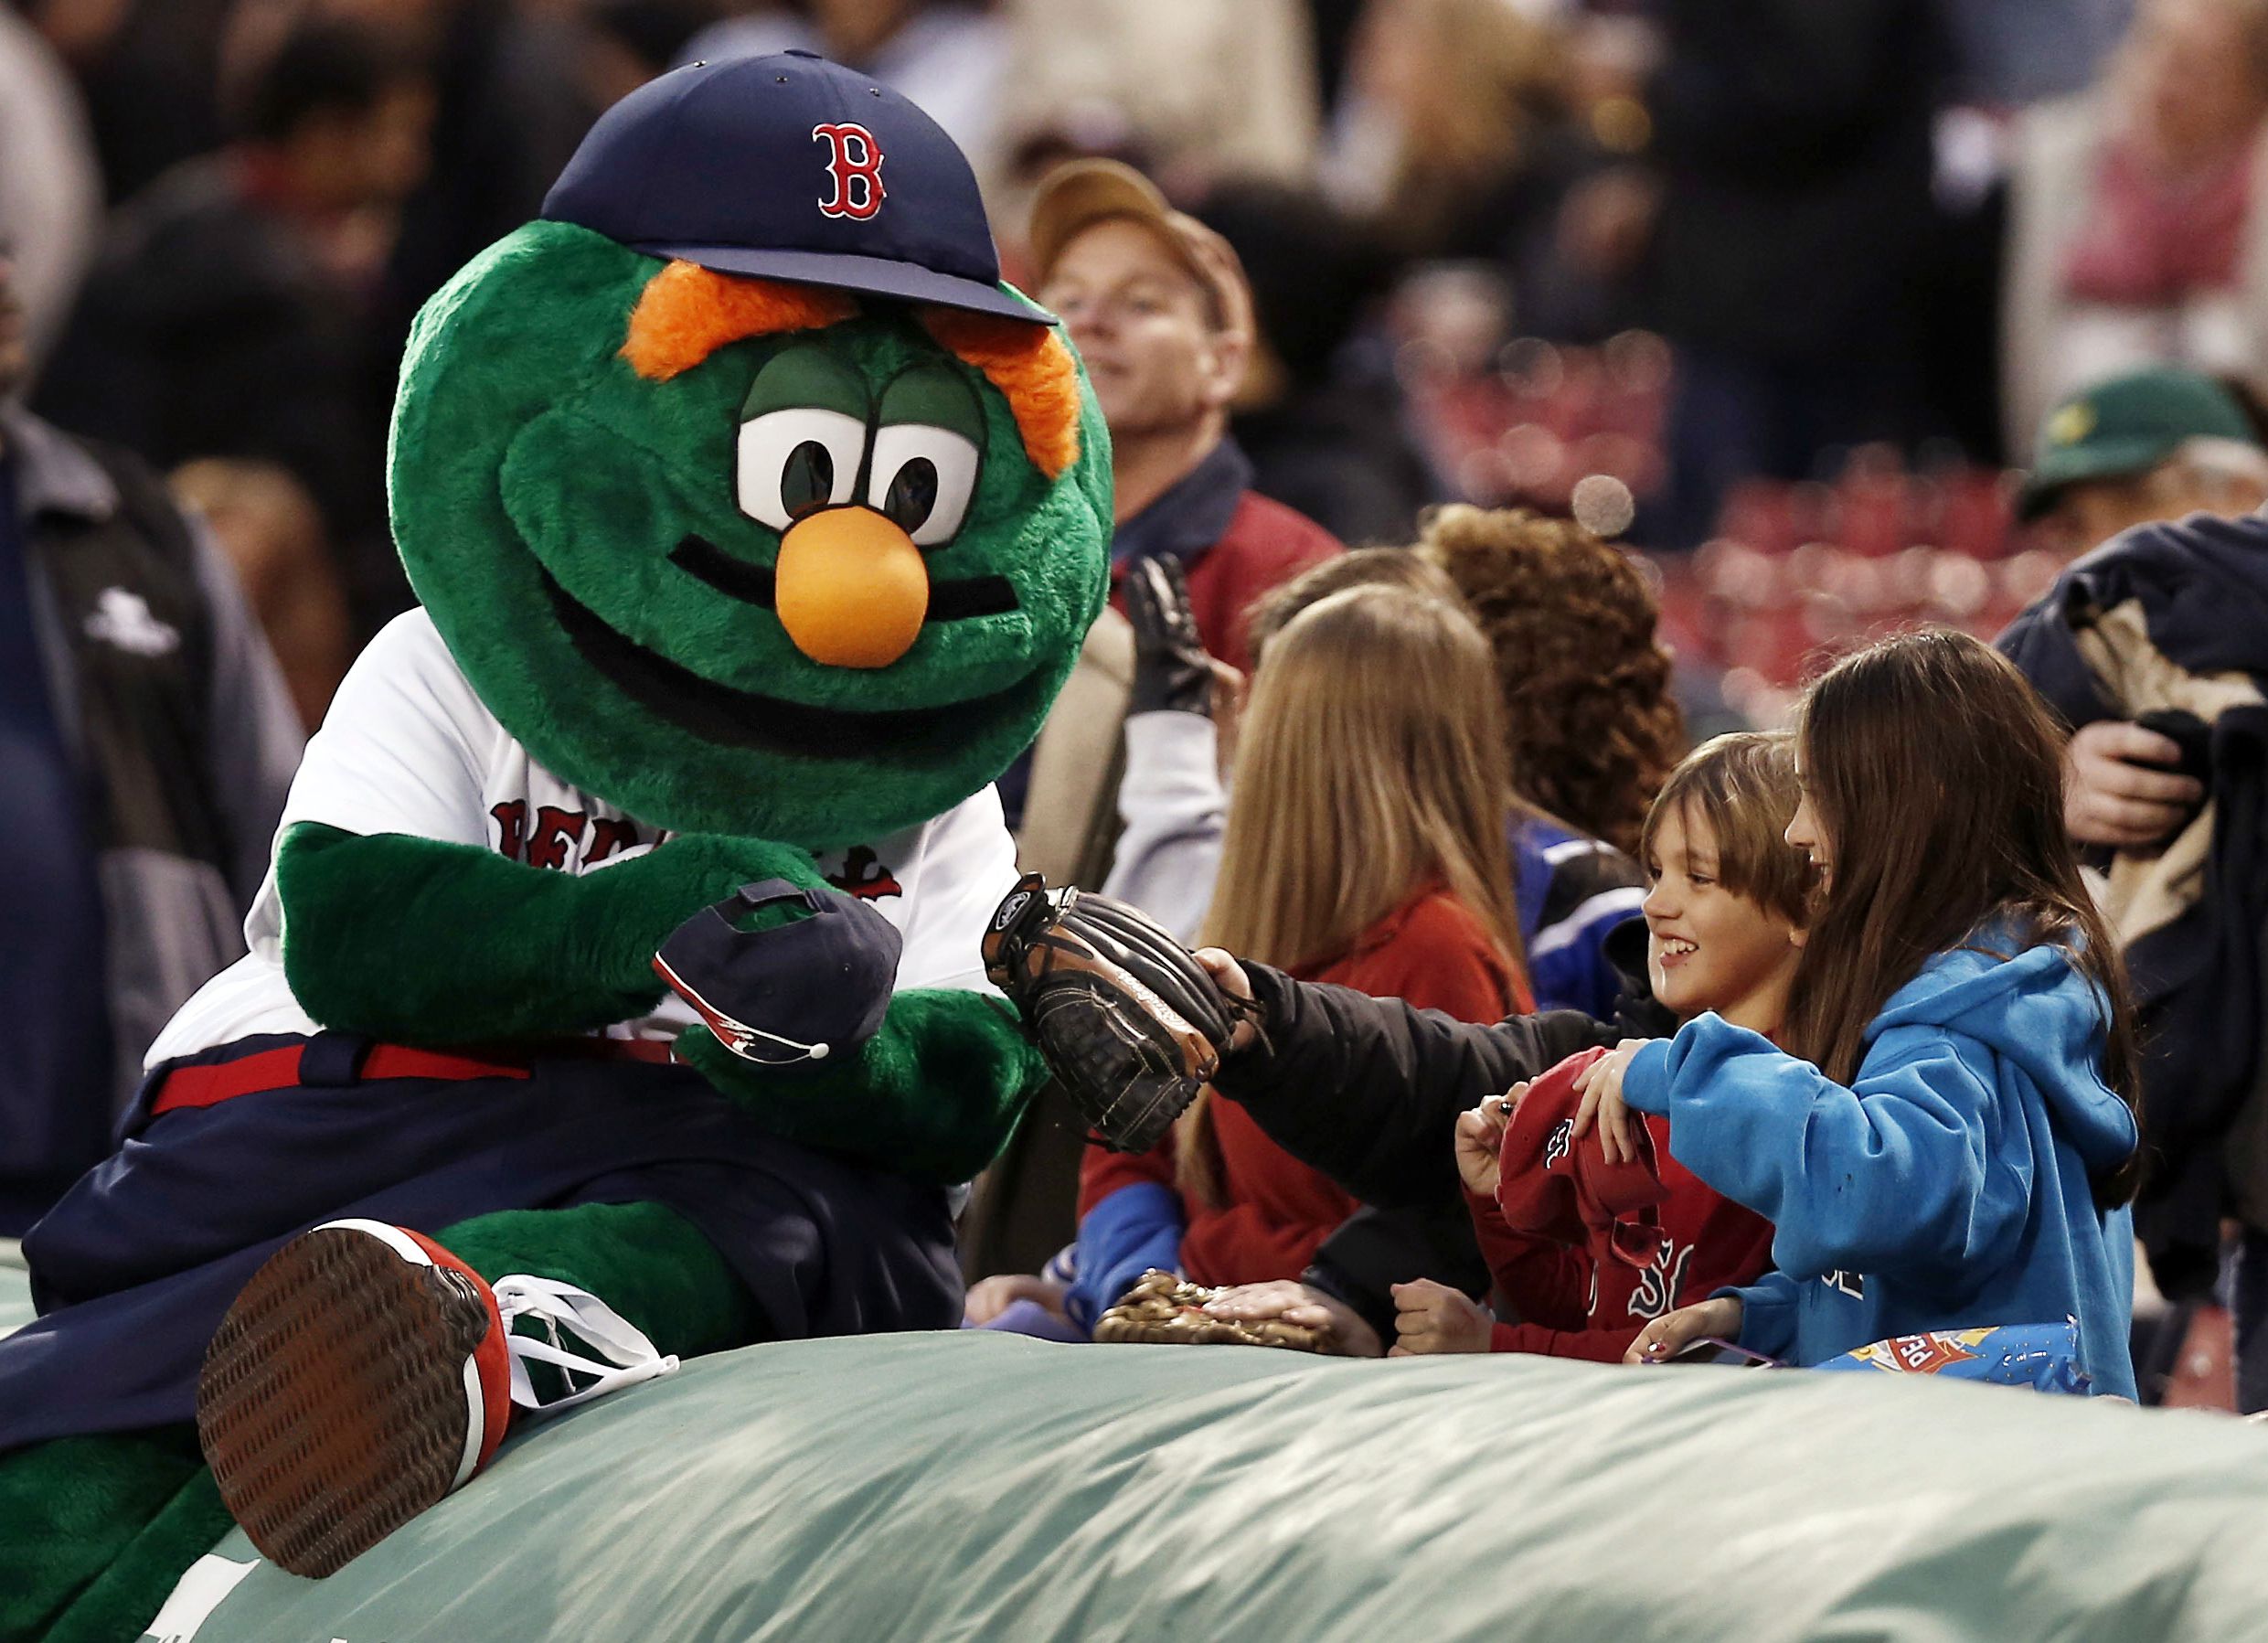 BOSTON, MA - FEBRUARY 03: Boston Red Sox mascots, Wally the Green